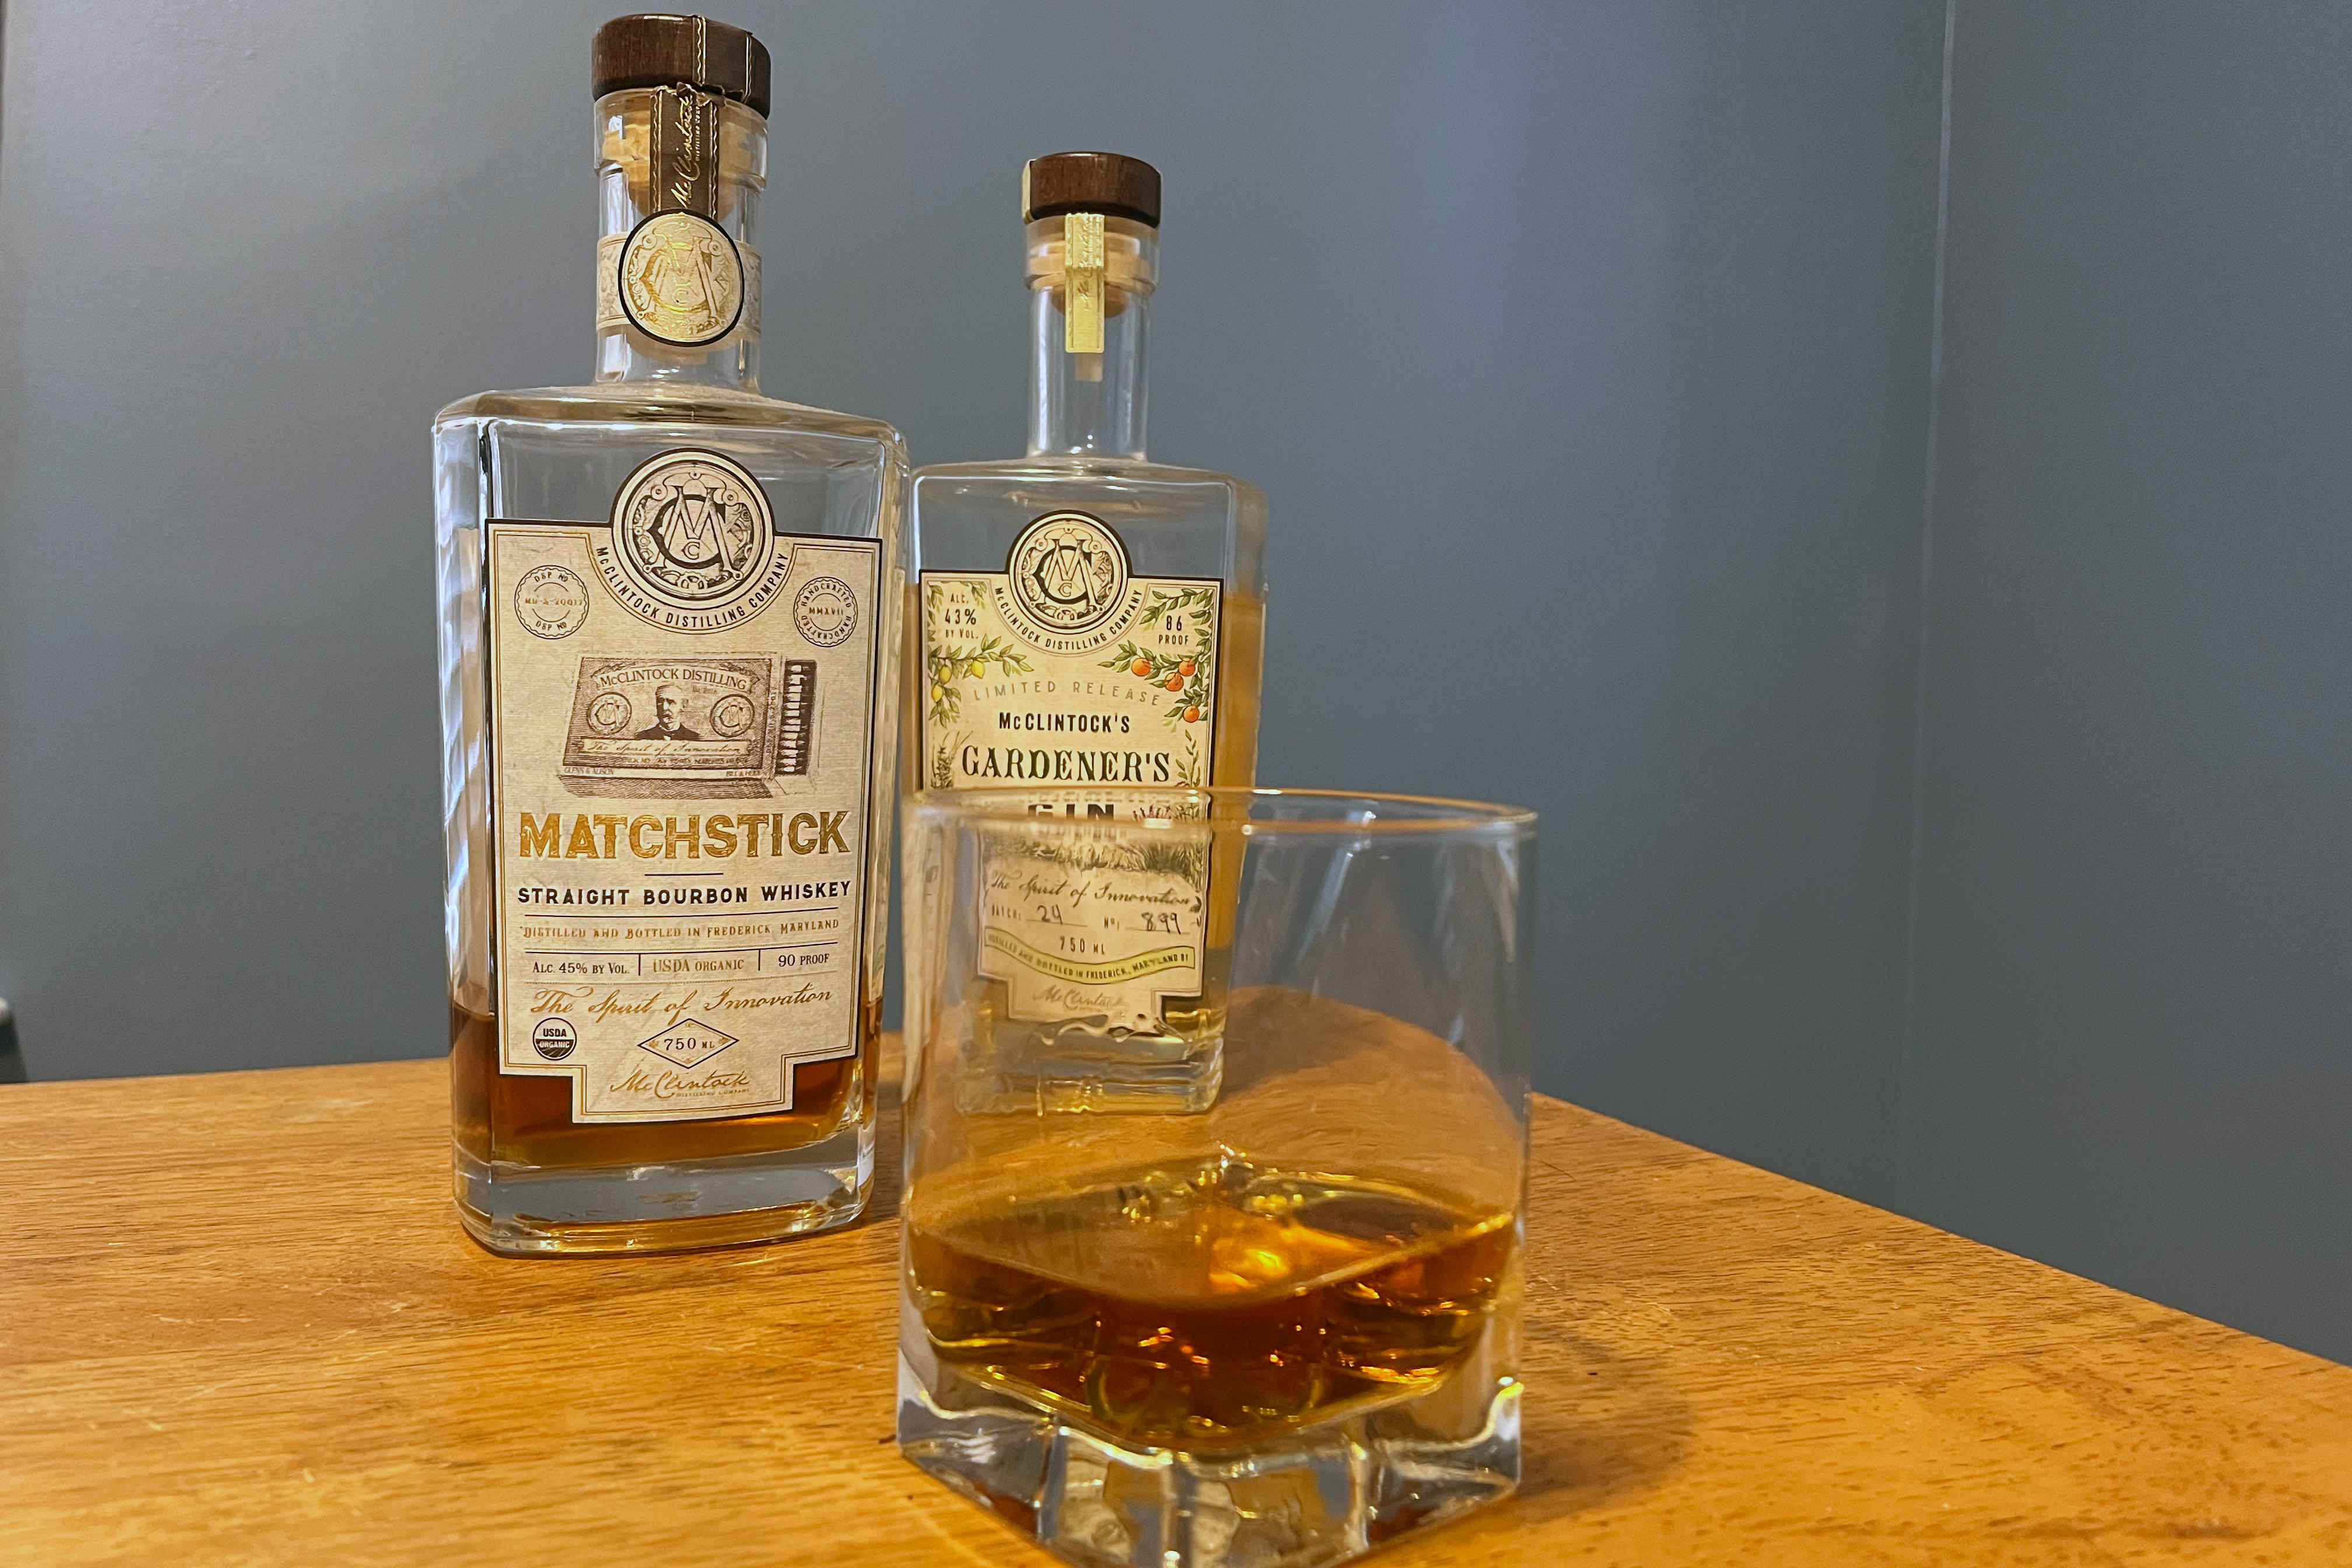 McClintock's Matchstick Bourbon and Gardner's Gin